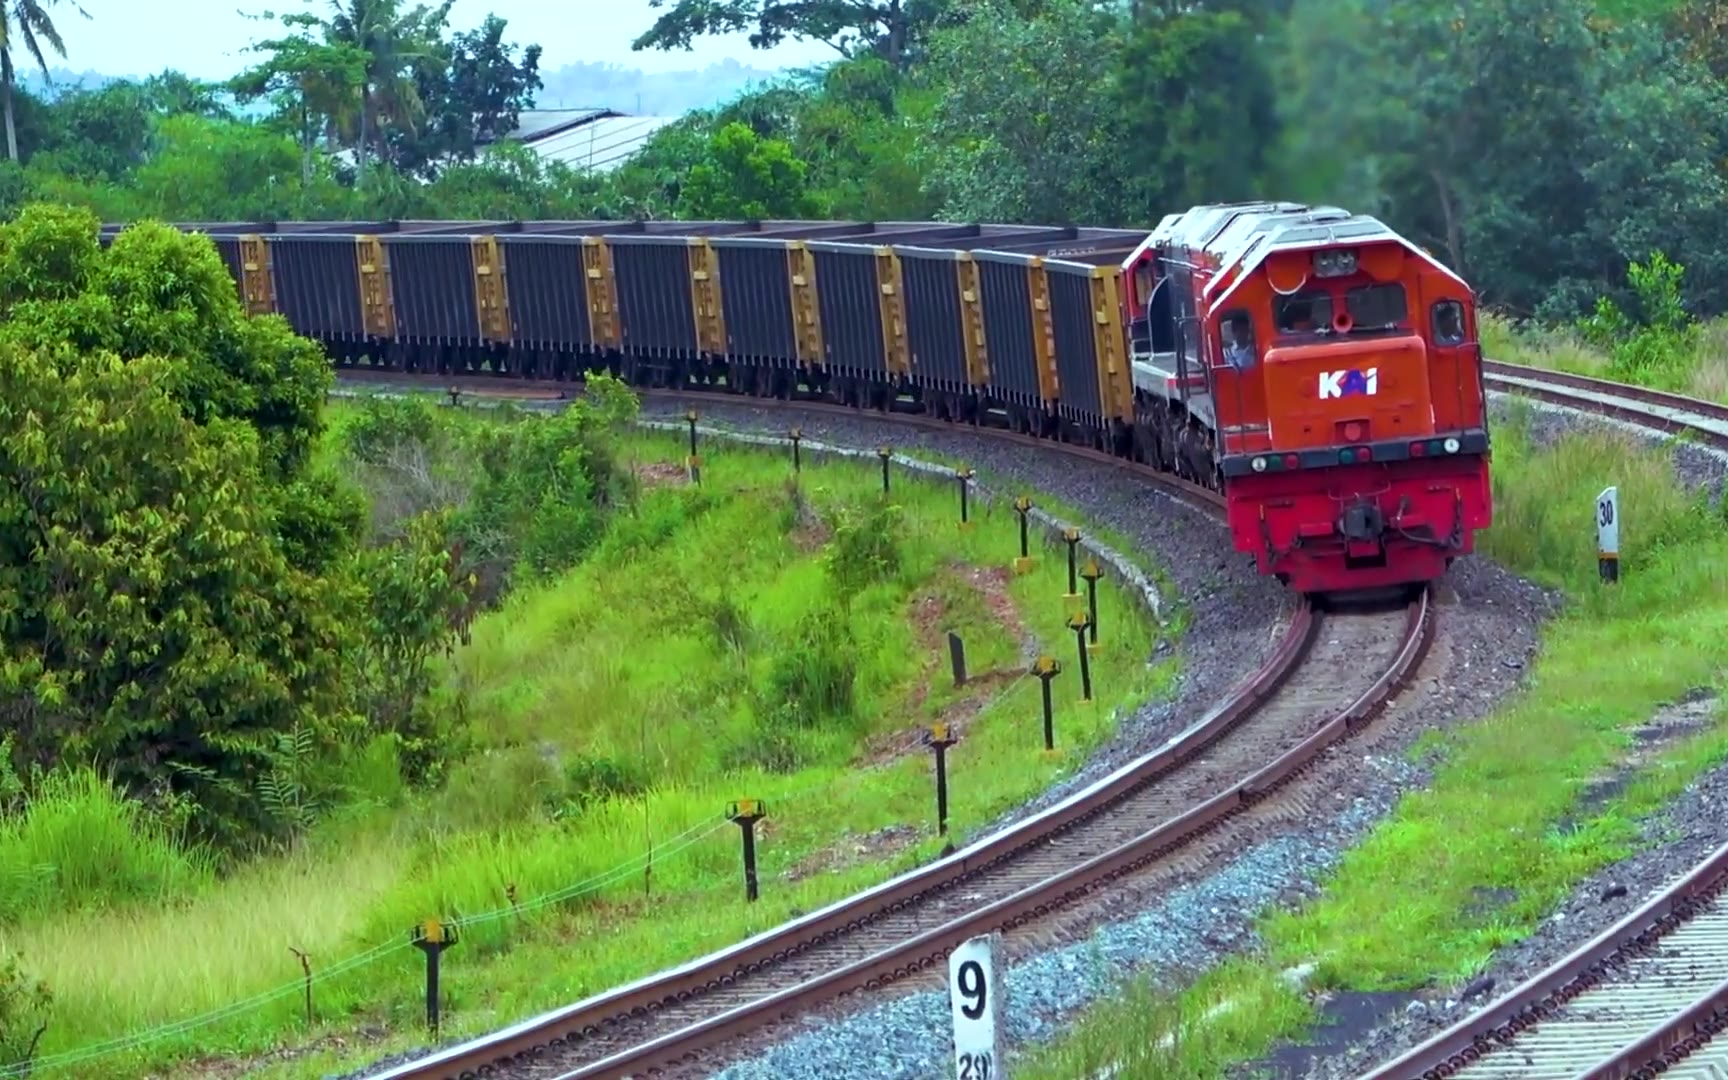 【世界铁路】印度尼西亚kai铁路公司的美制cc202型内